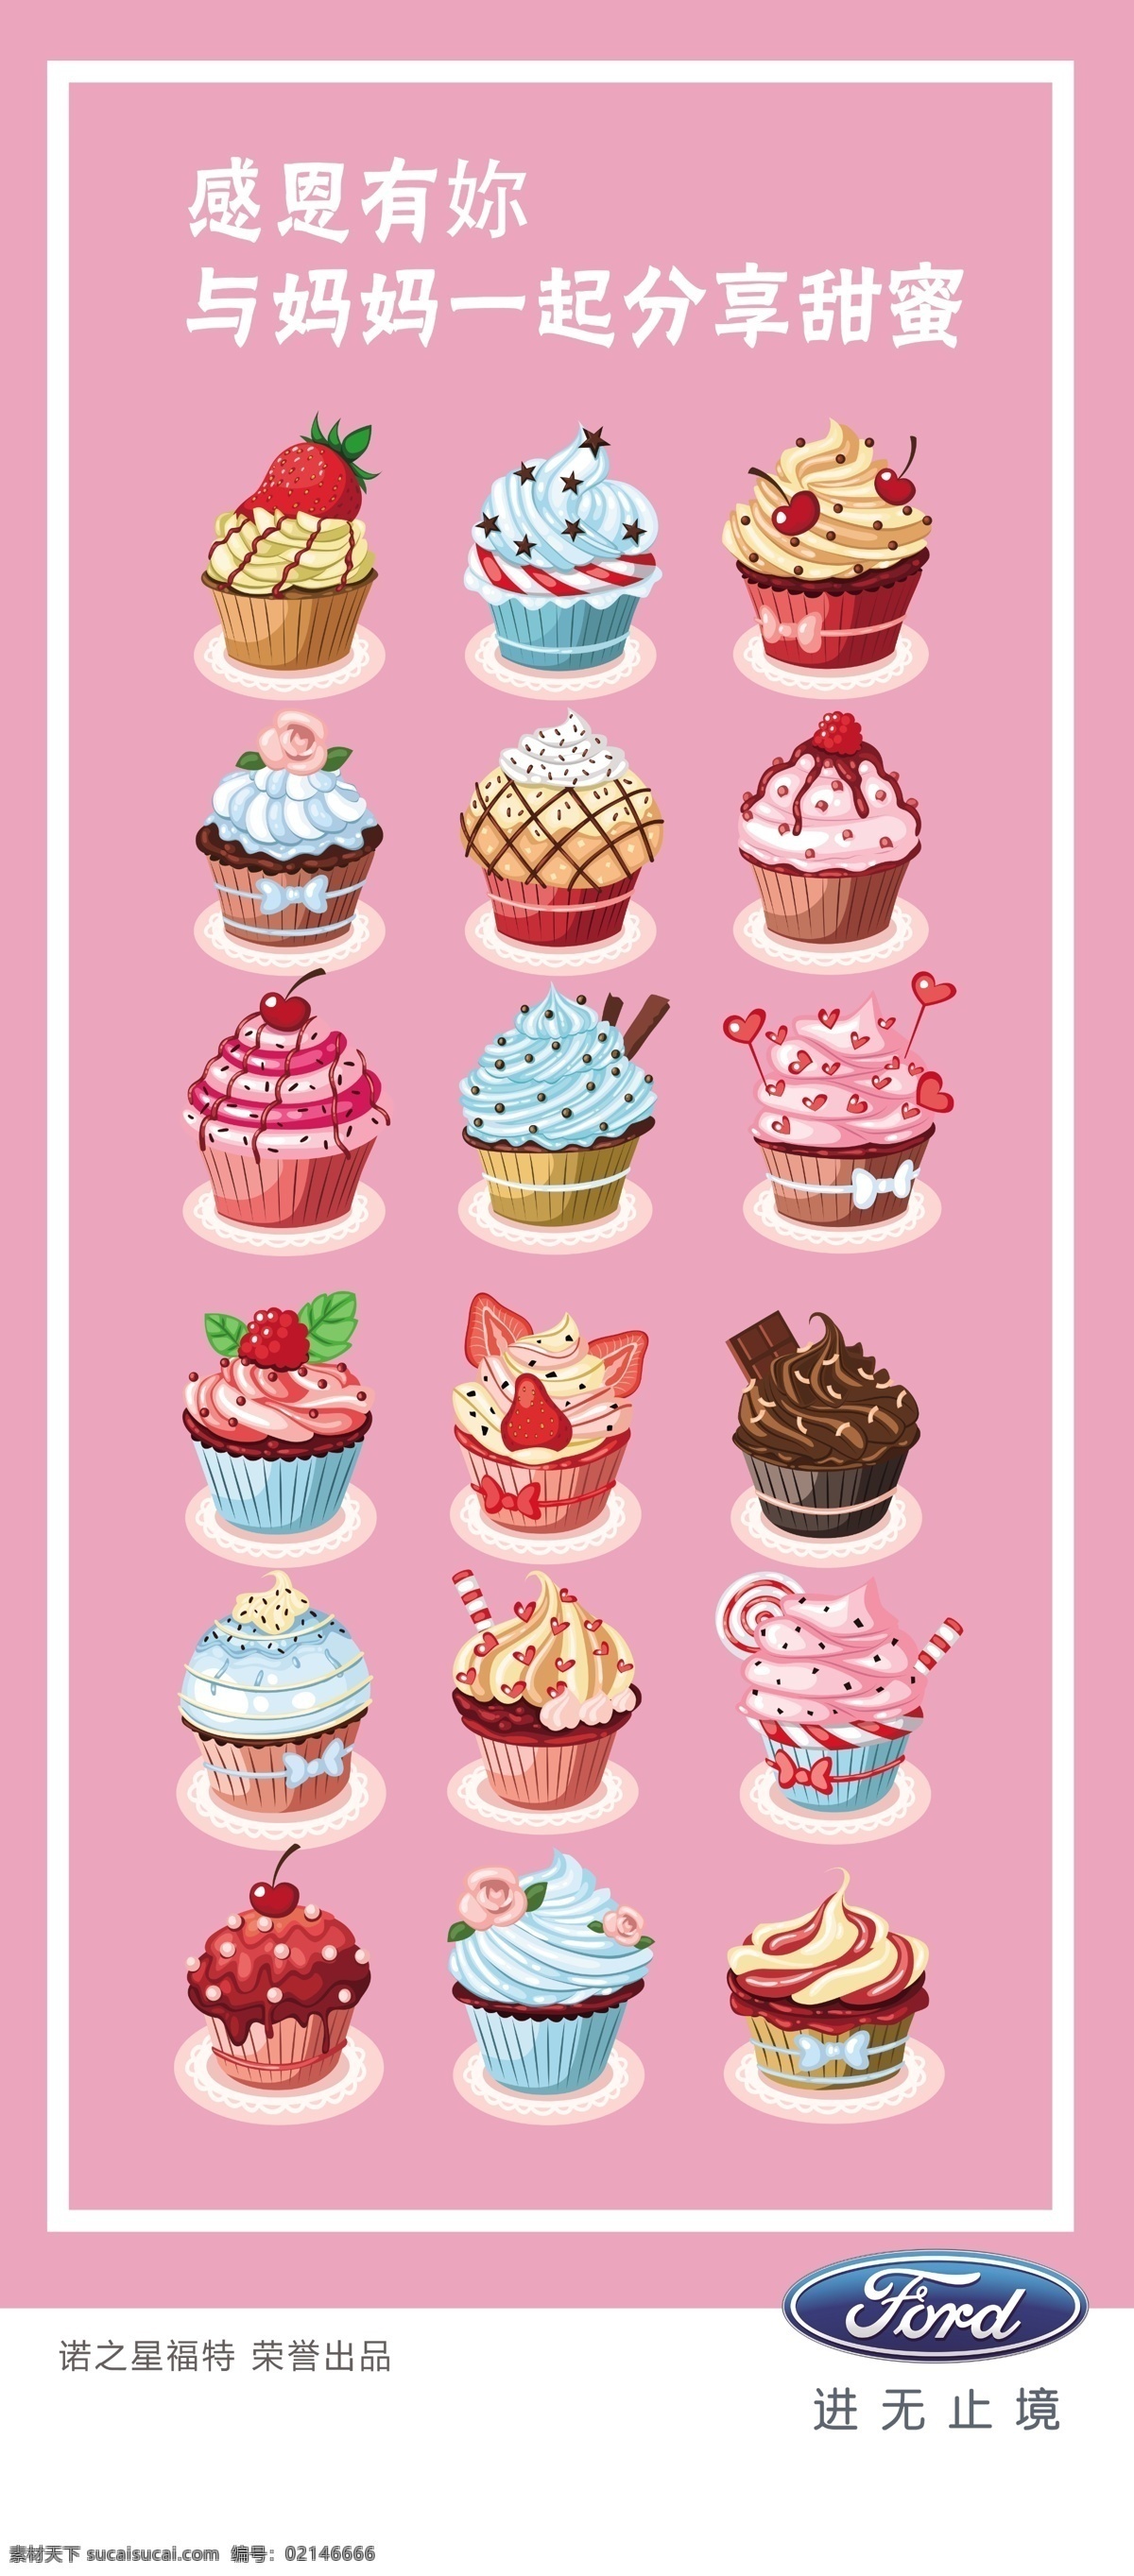 冰淇淋 冰激凌 雪糕 展架 甜品 甜点 福特 logo 海报 草莓 香草 汽车